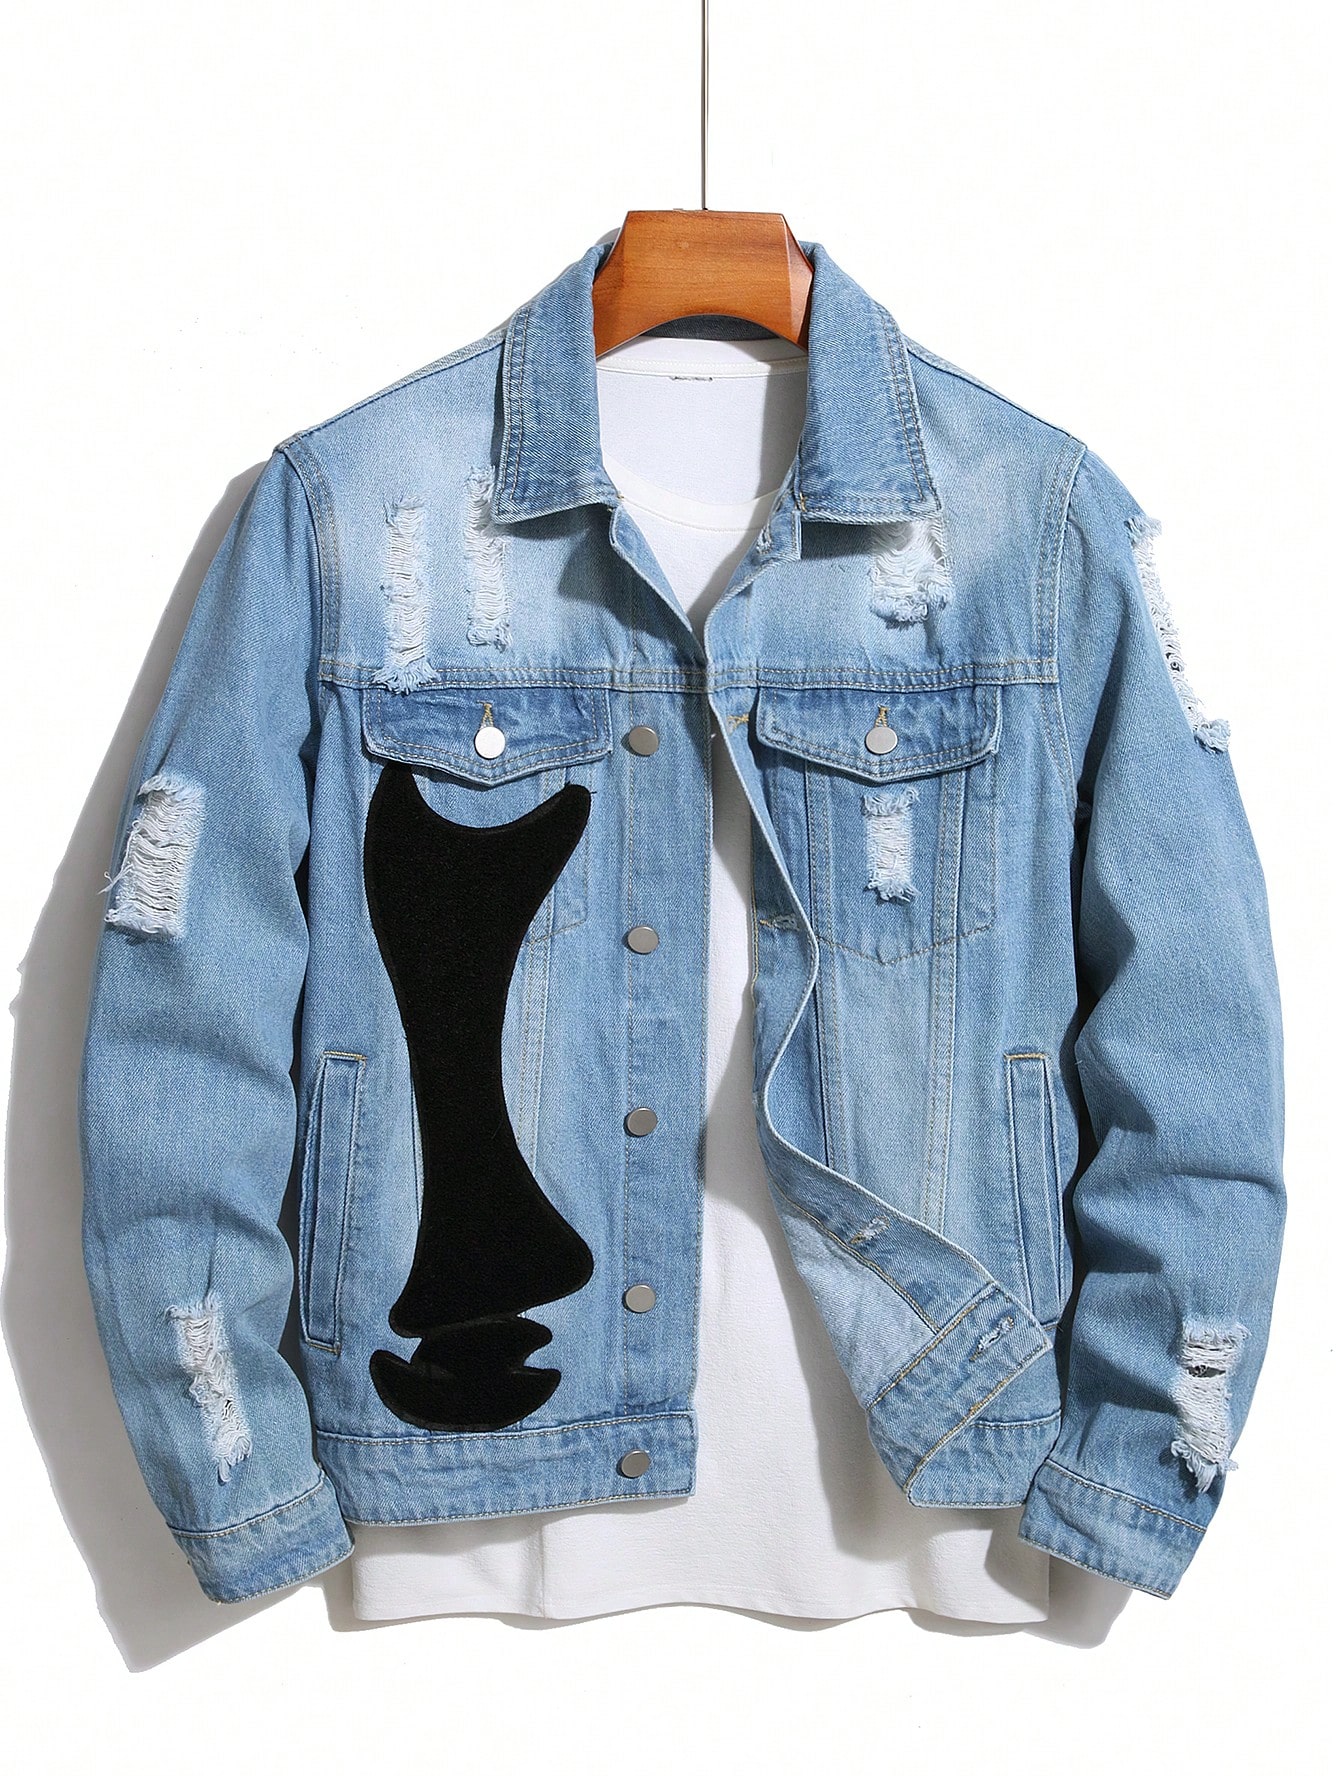 цена Мужская джинсовая куртка Manfinity EMRG с длинными рукавами и потертыми деталями, легкая стирка